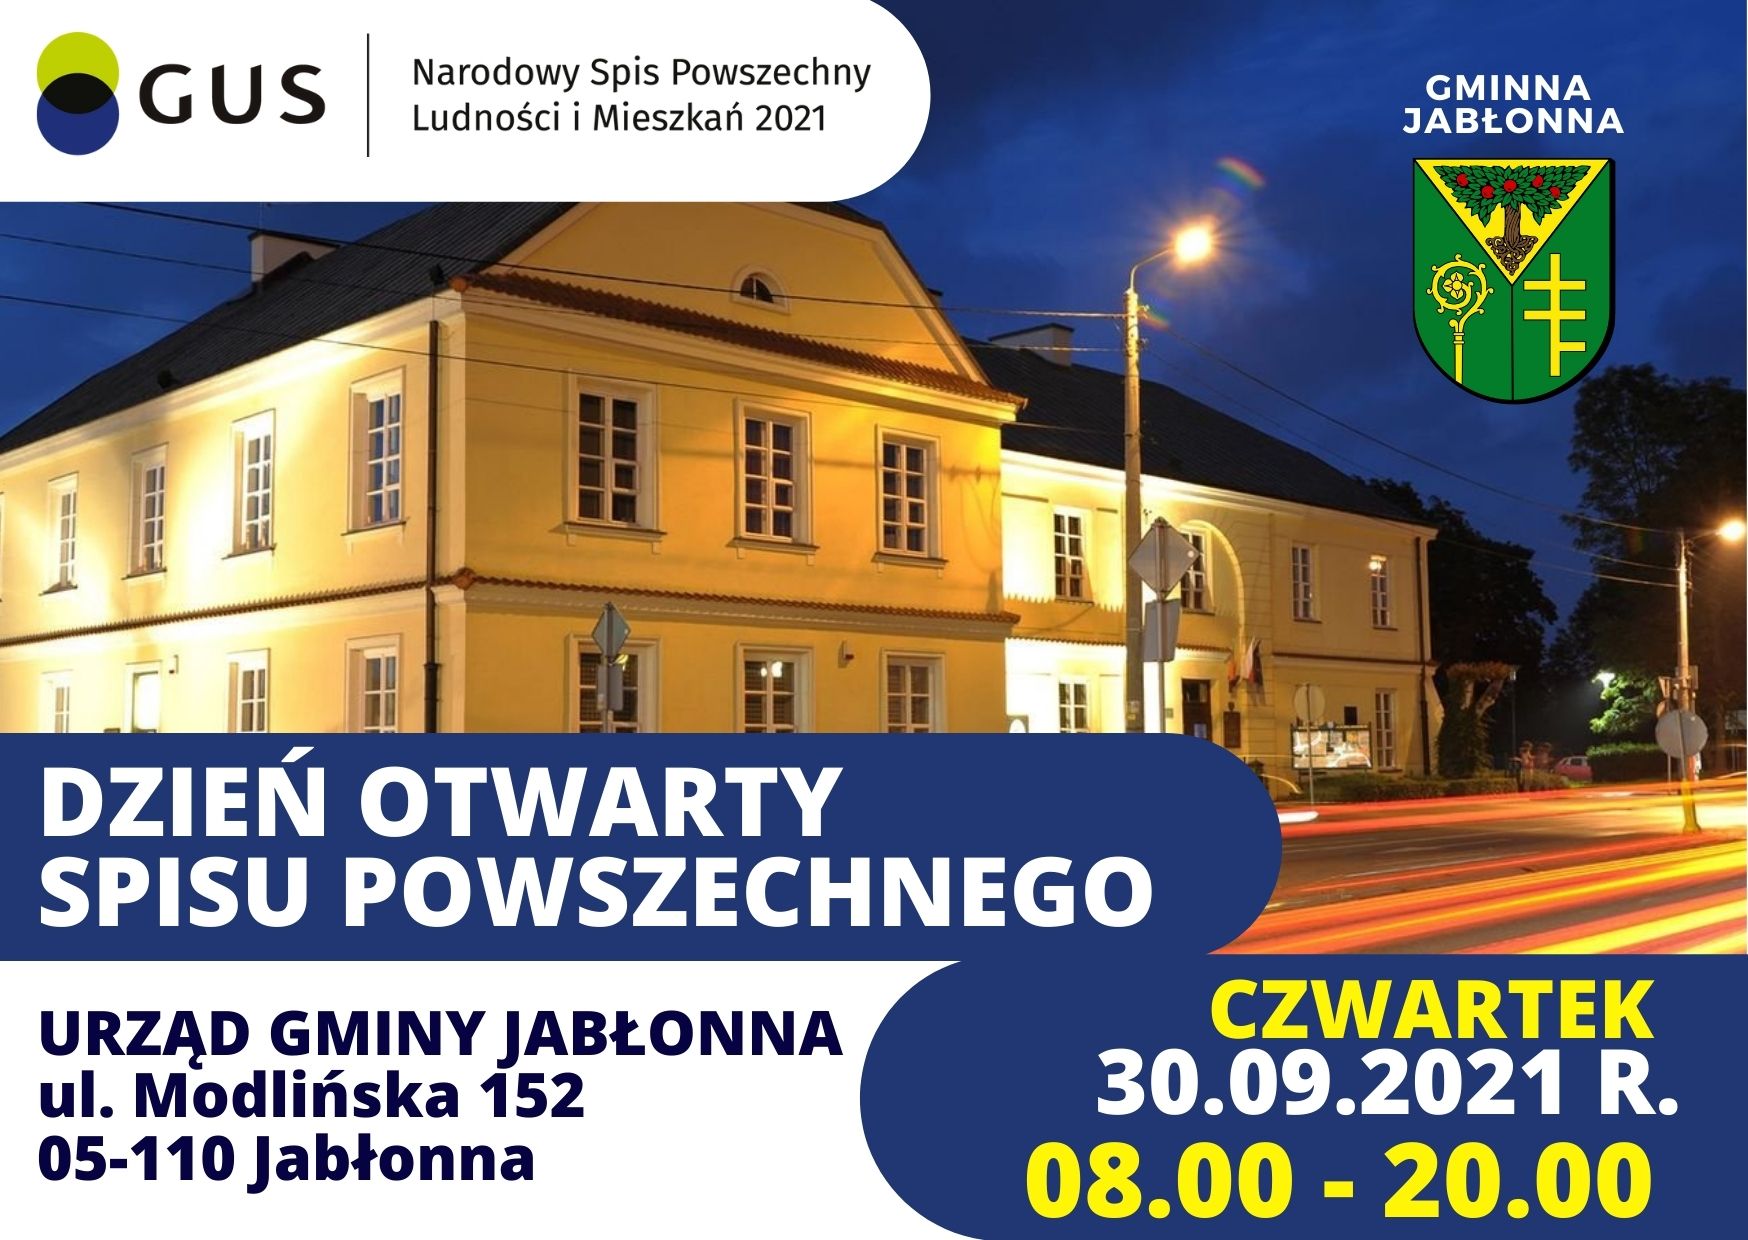 Dzień otwarty spisu powszechnego! Punkt w Urzędzie Gminy Jabłonna będzie w czwartek 30.09.2021 r. czynny w godzinach 8.00-20.00.